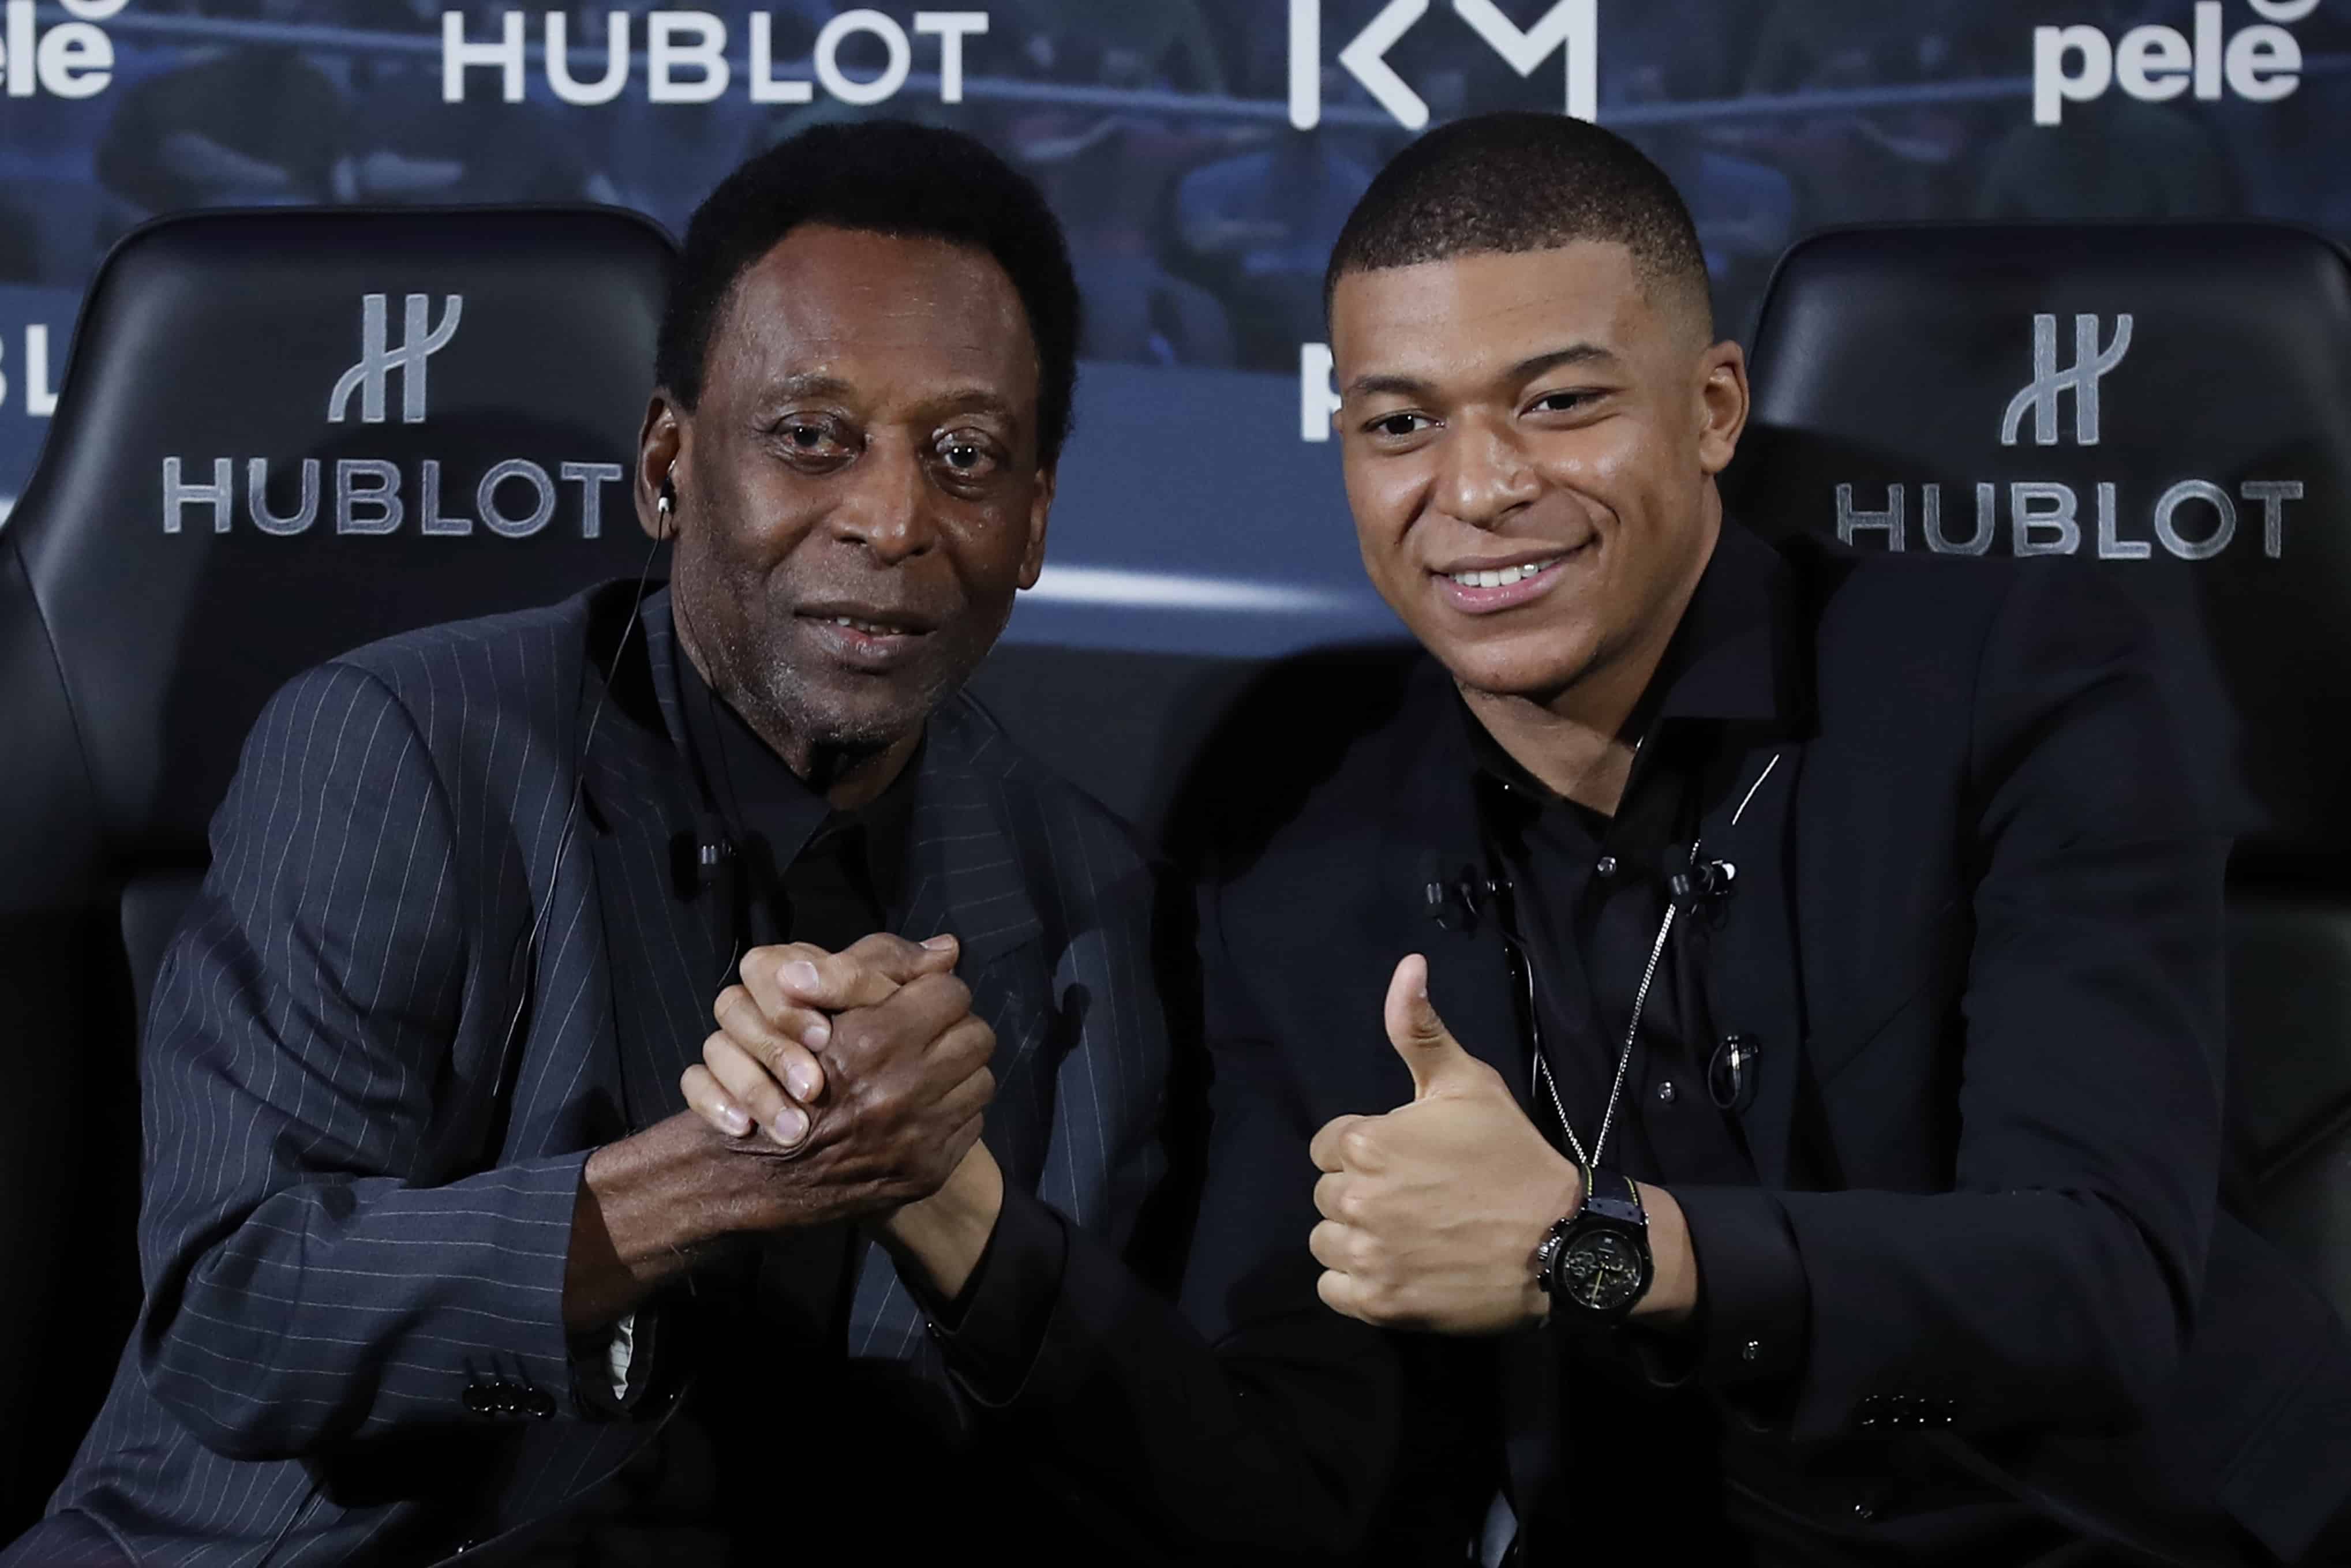 La leyenda del fútbol brasileño Pelé, a la izquierda, y el futbolista francés Kylian Mbappé posan durante una sesión de fotos en París, el martes 2 de abril de 2019.